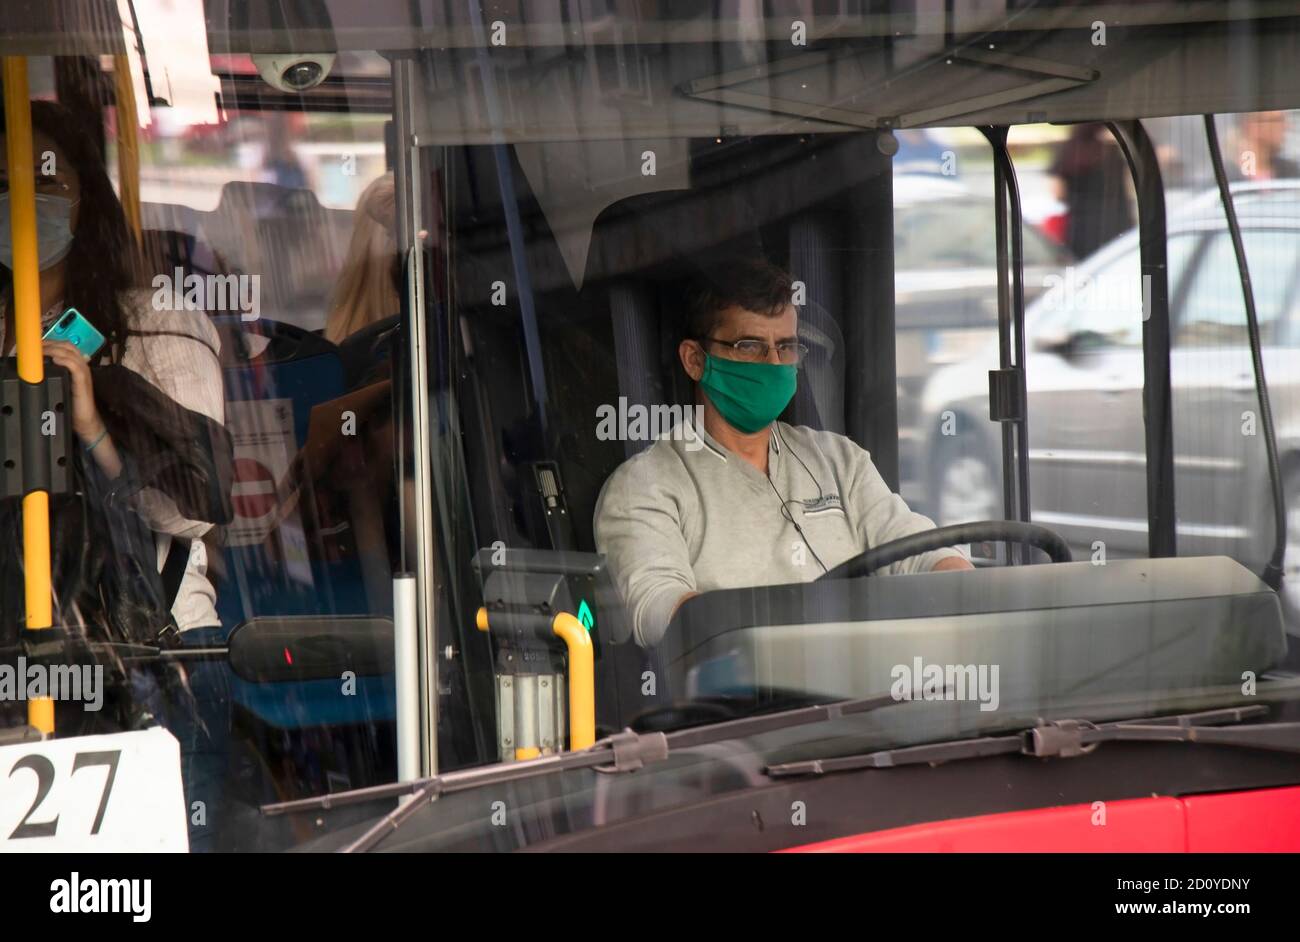 Belgrado, Serbia - 02 ottobre 2020: Conducente che indossa una maschera chirurgica facciale che guida un autobus cittadino con passeggeri, dall'esterno attraverso il vetro anteriore Foto Stock